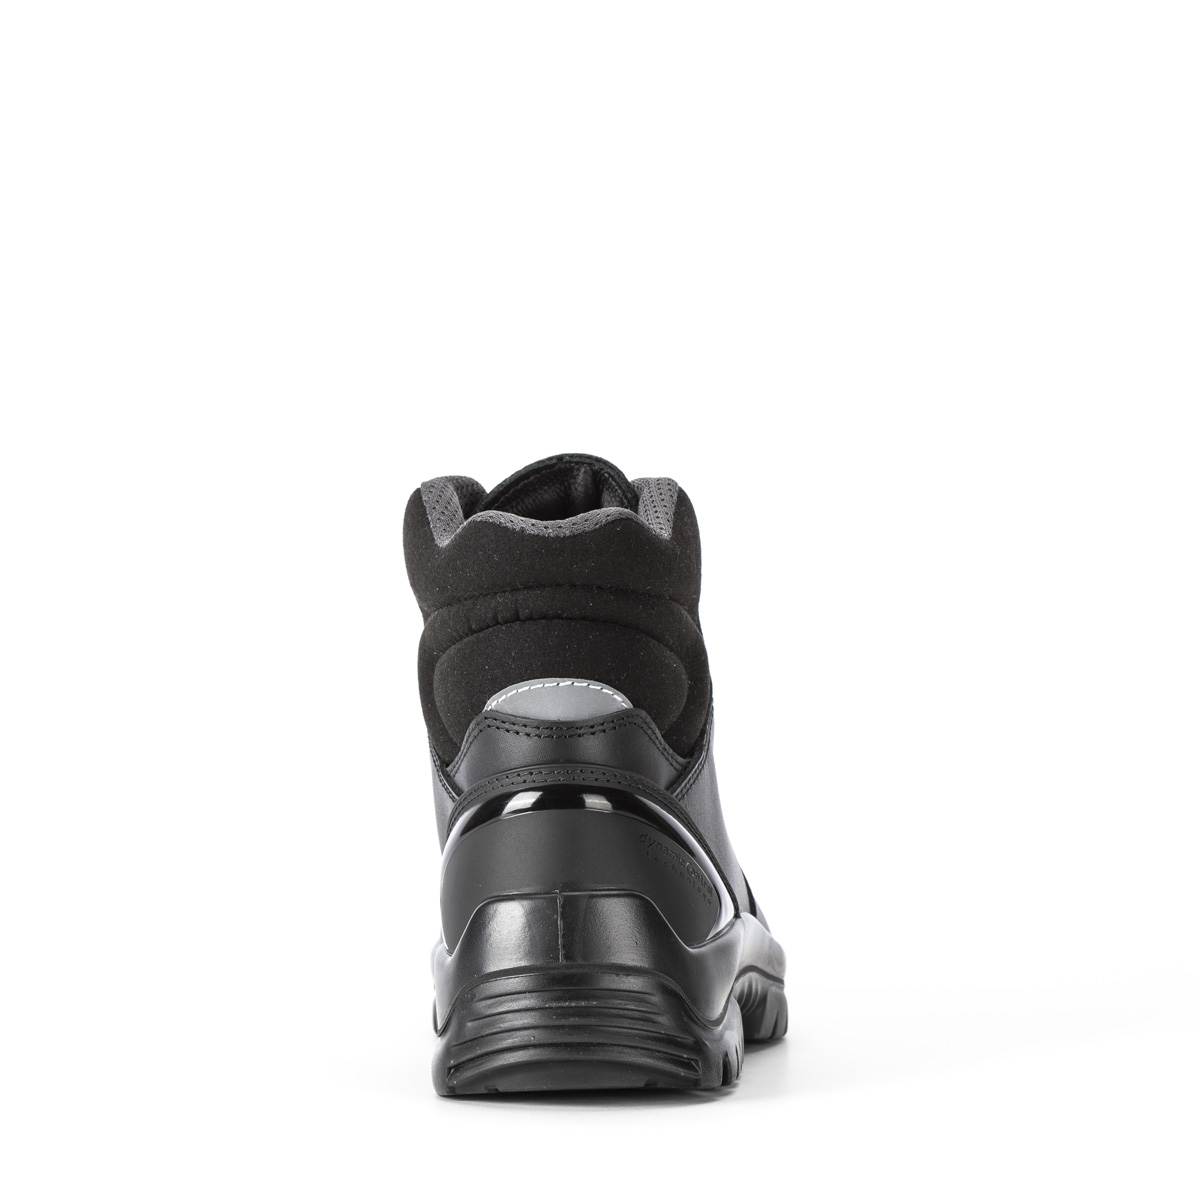 Horizon STEEL - Ankle boot con classe di protezione S3 SRC - Codice ...